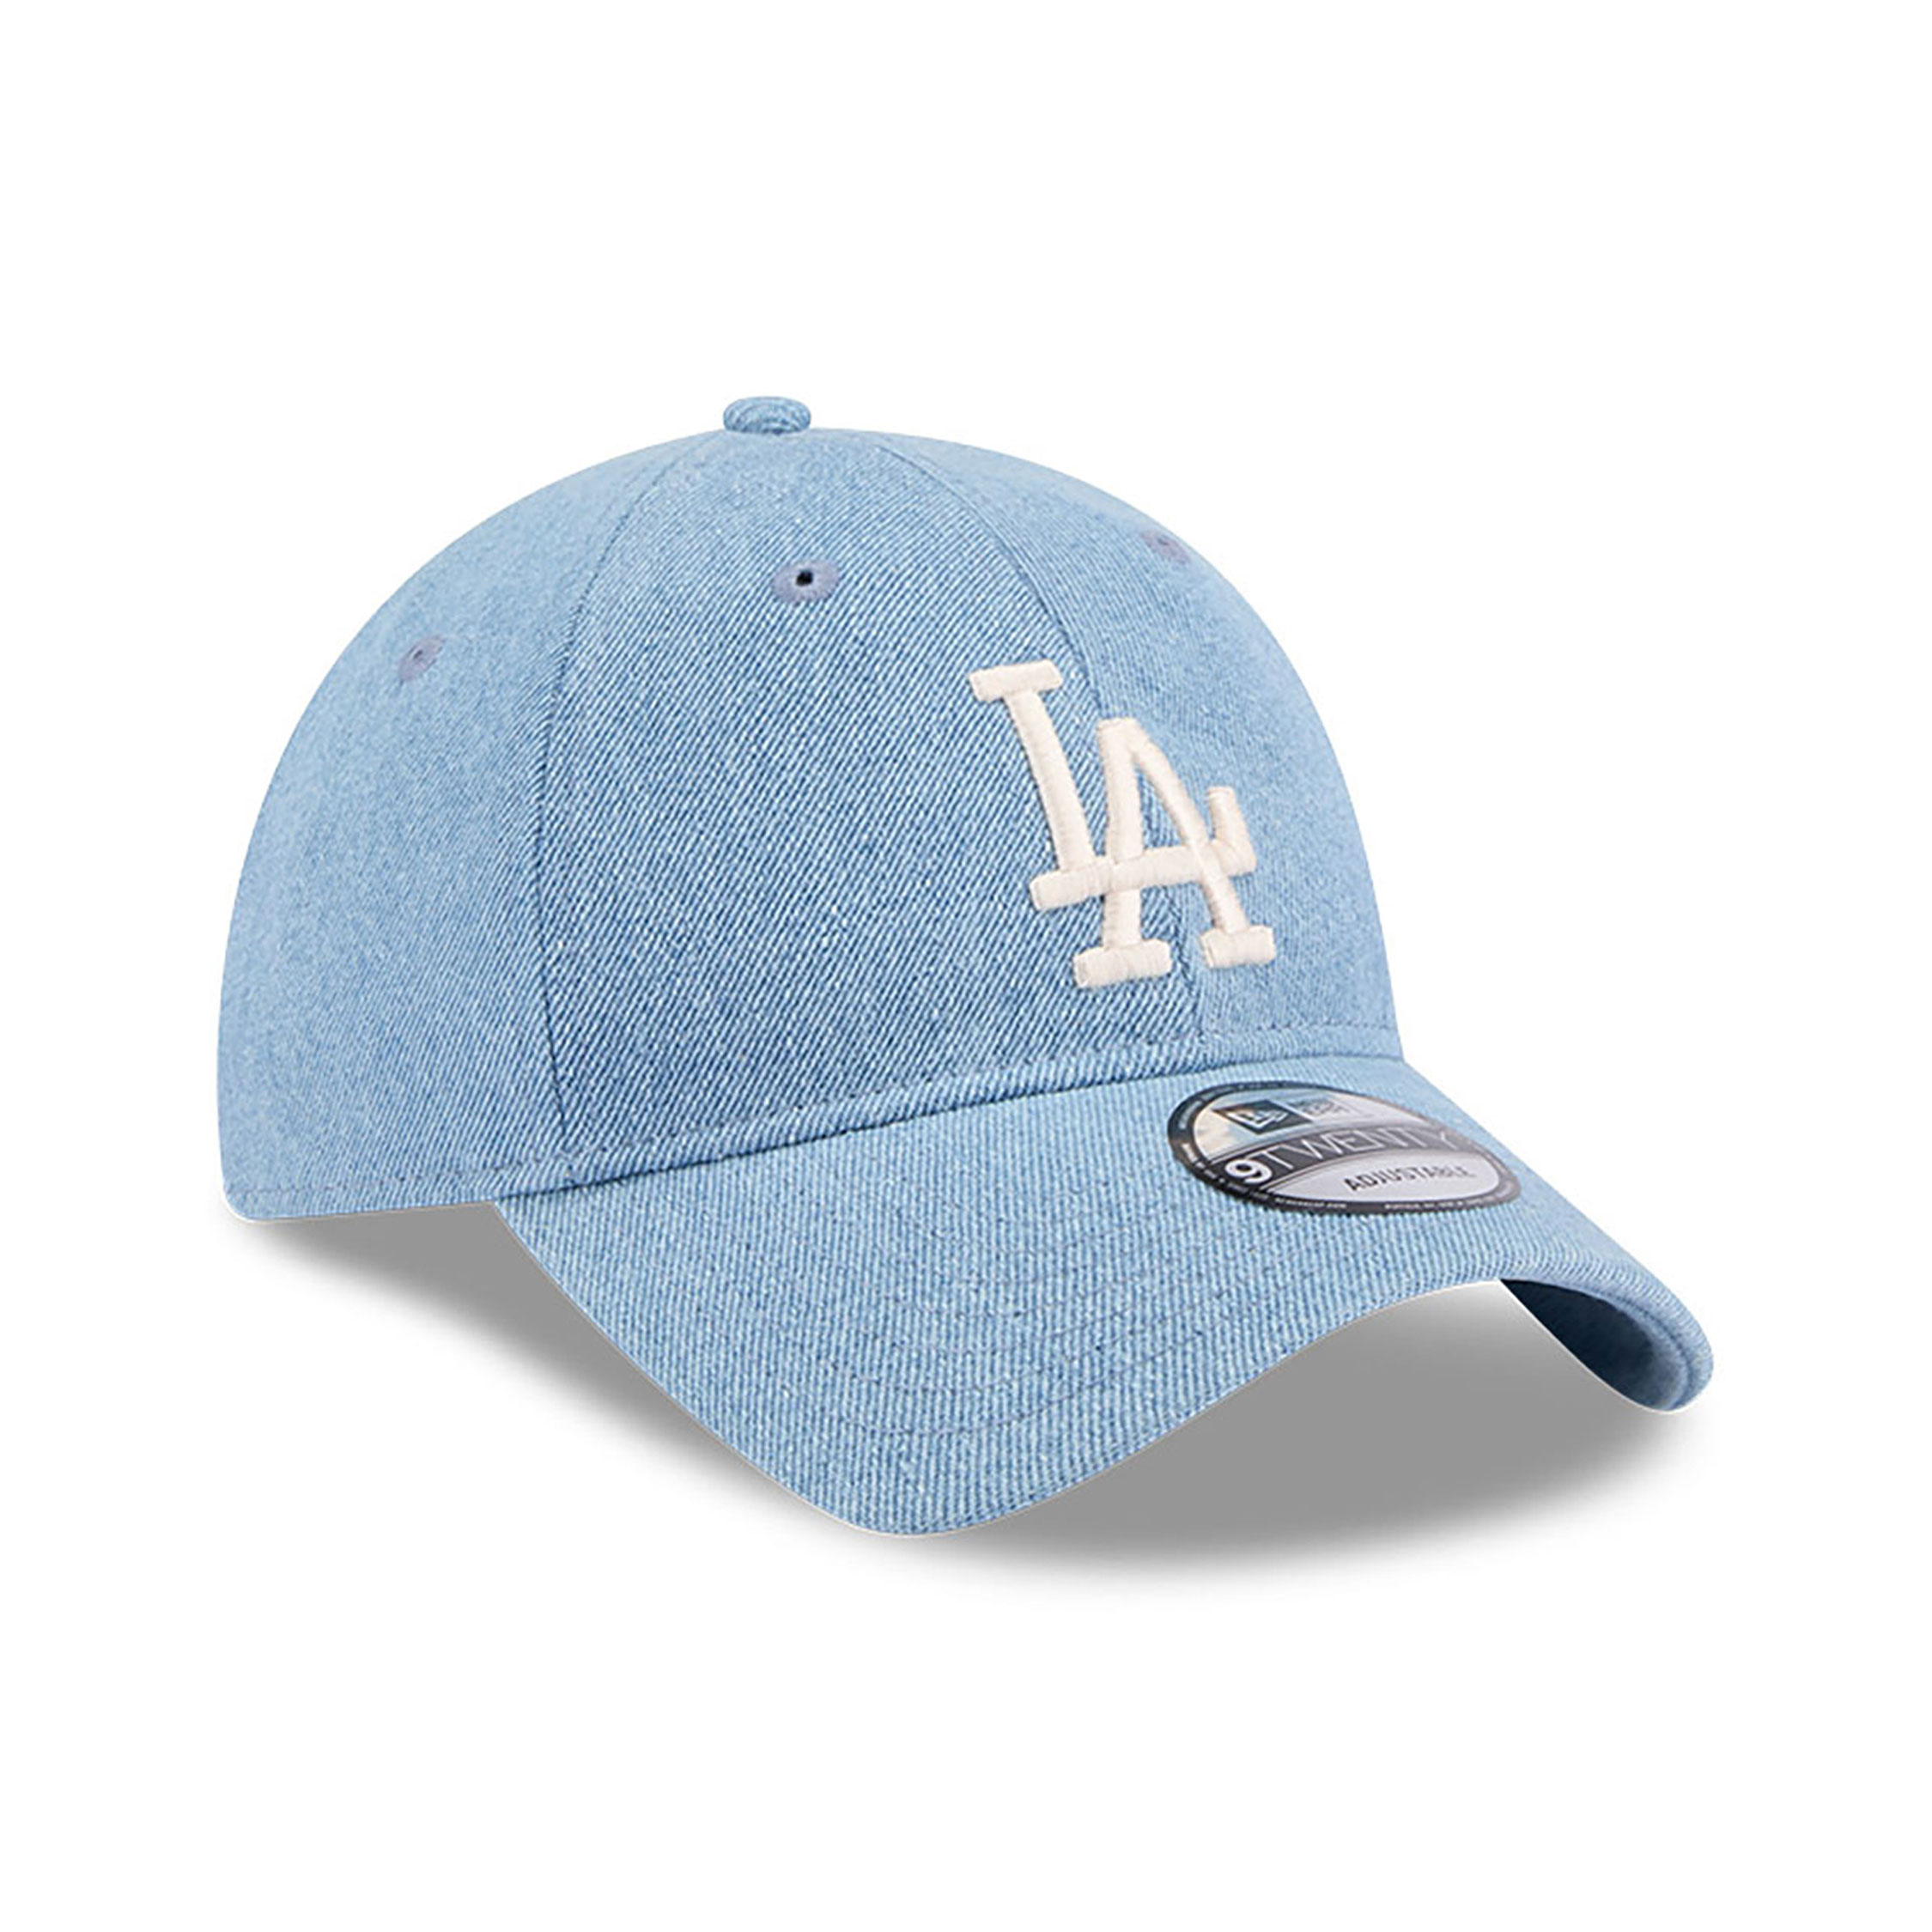 LA Dodgers Washed Denim Light Blue 9TWENTY Adjustable Cap